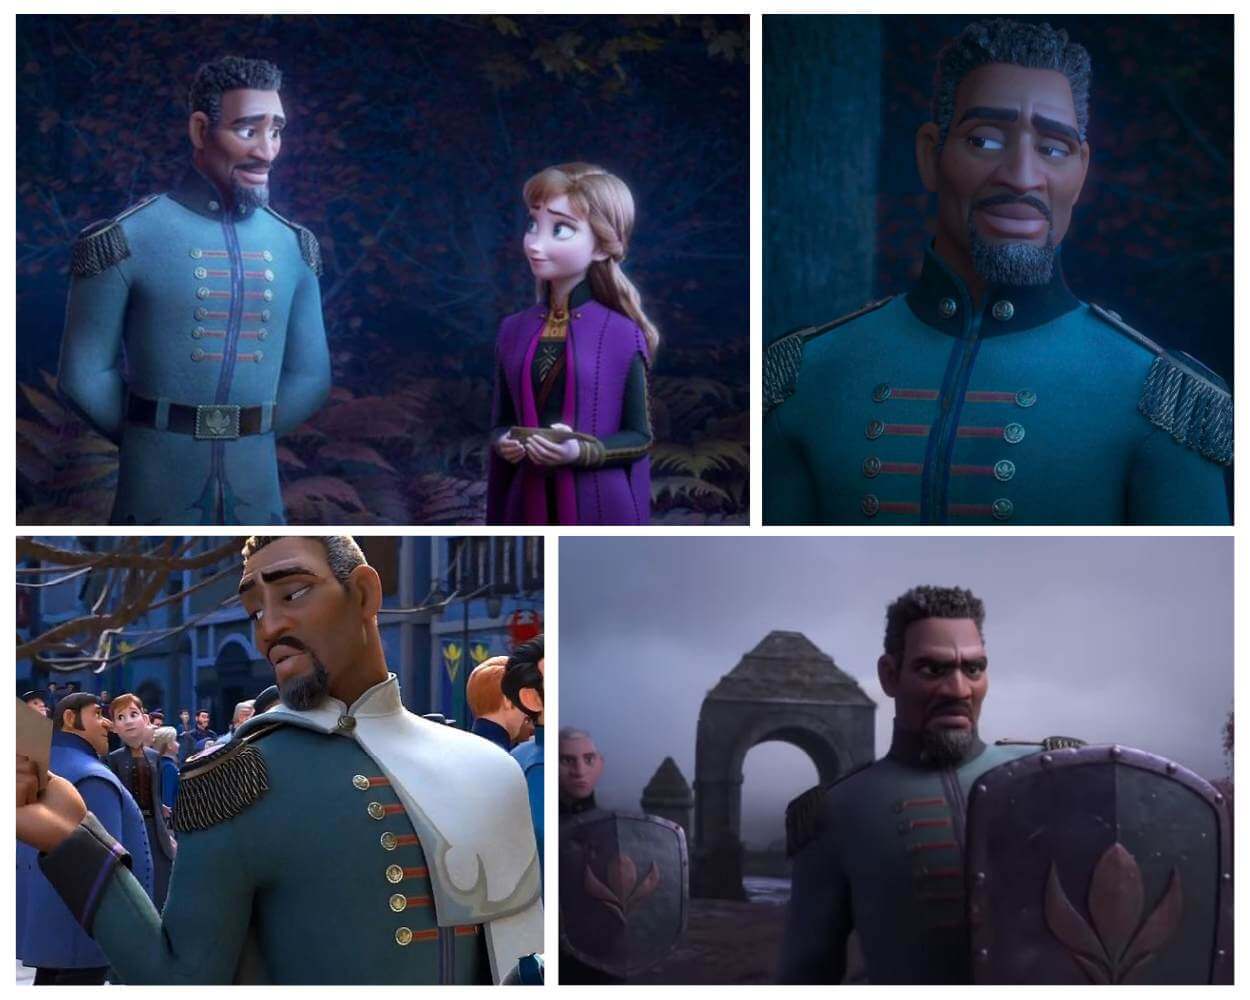 Lieutenant Mattias - Frozen and Frozen 2 Cast & Characters